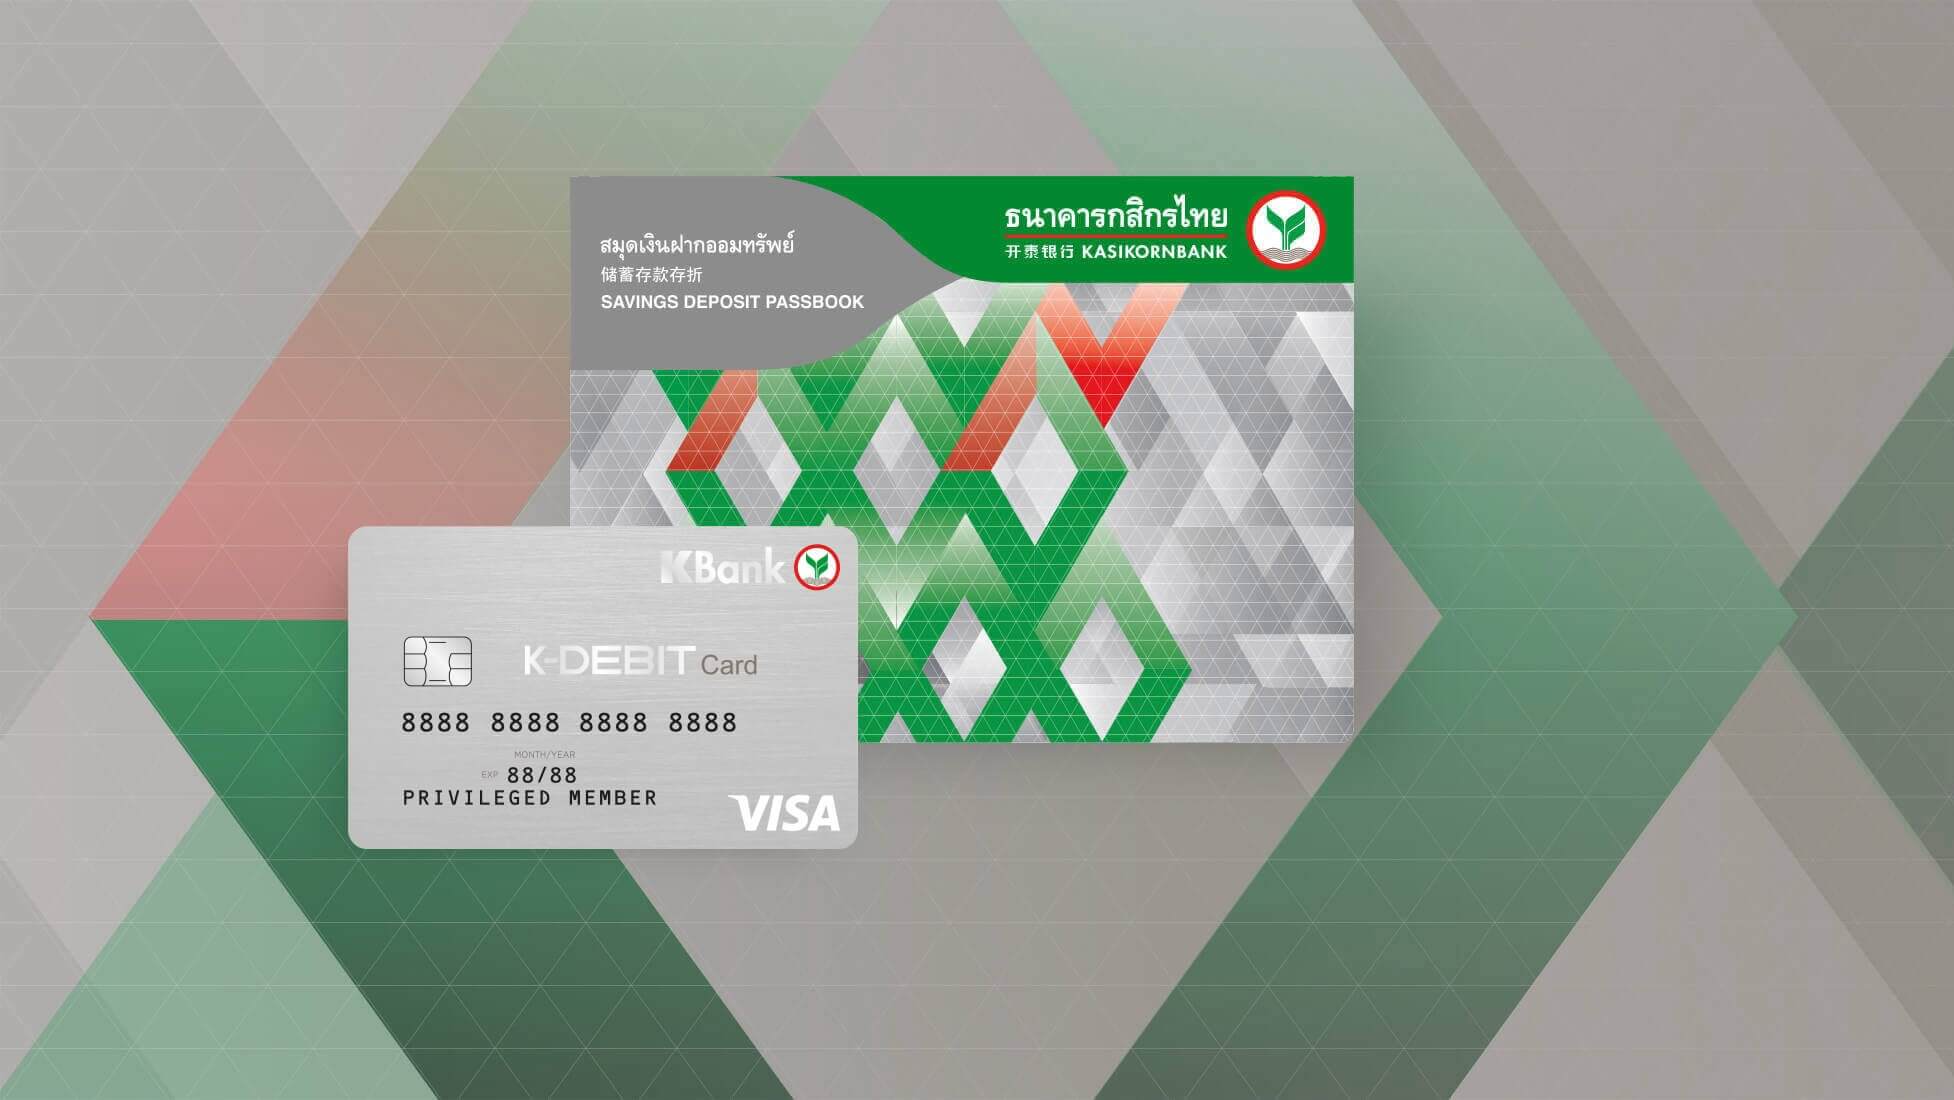 สมัครบัตรกดเงินสดกสิกรไทยใช้อะไรบ้าง และเช็คดอกเบี้ยบัตรกดเงินสดกสิกร -  Mcuir.Com สนใจยืมเงินสดด่วนผ่านแหล่งให้ยืมเงินฉุกเฉินอนุมัติง่าย  และการกู้เงินธนาคารรวมไปถึงการสมัครแอปยืมเงิน